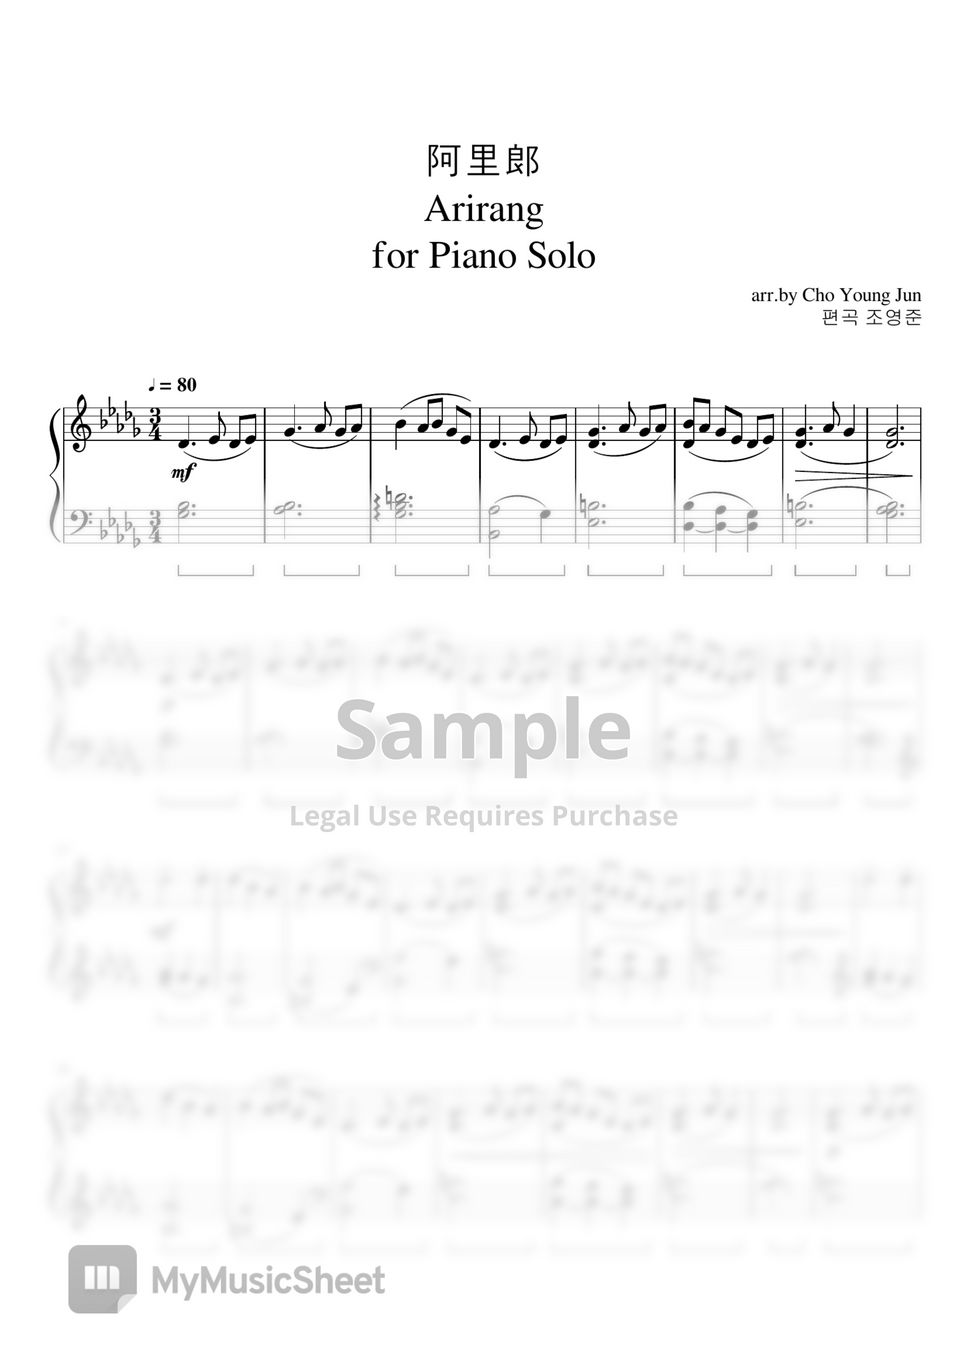 Choyoungjun - Arirang for Solo Piano (Arirang piano) by Choyoungjun